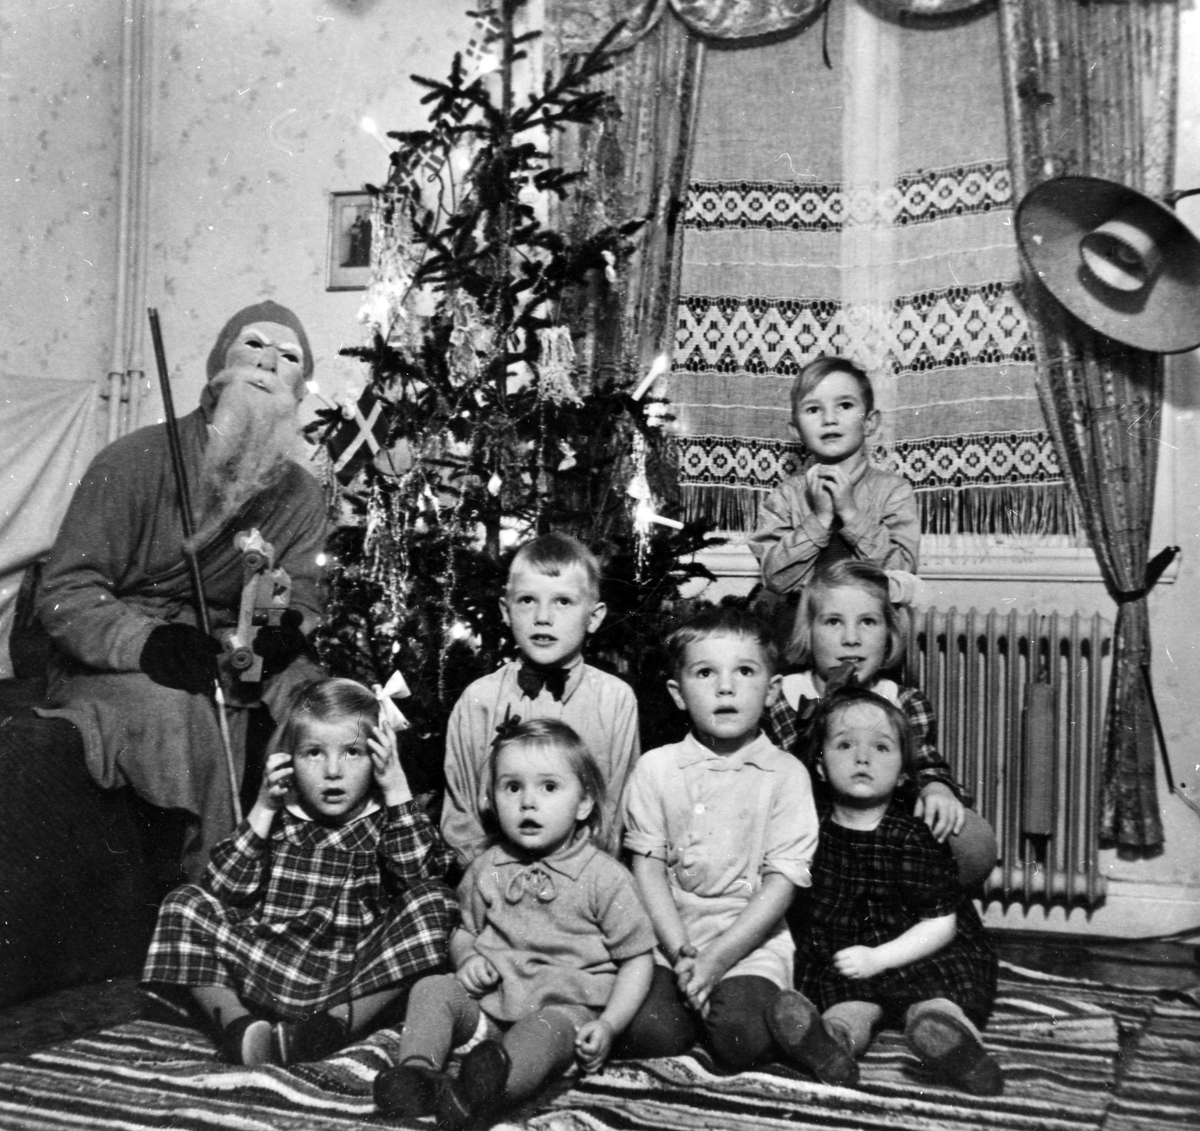 Olof Jacobsen, utklädd till tomte, sitter vid en julgran tillsammans med en liten skara barn hos familjen Bolin, Nolby. Olof (Olle) Jacobsen var morfar till Monica Jacobsen (andra från vänster i främre raden) och Dick Jacobsen (pojken längst bak). 